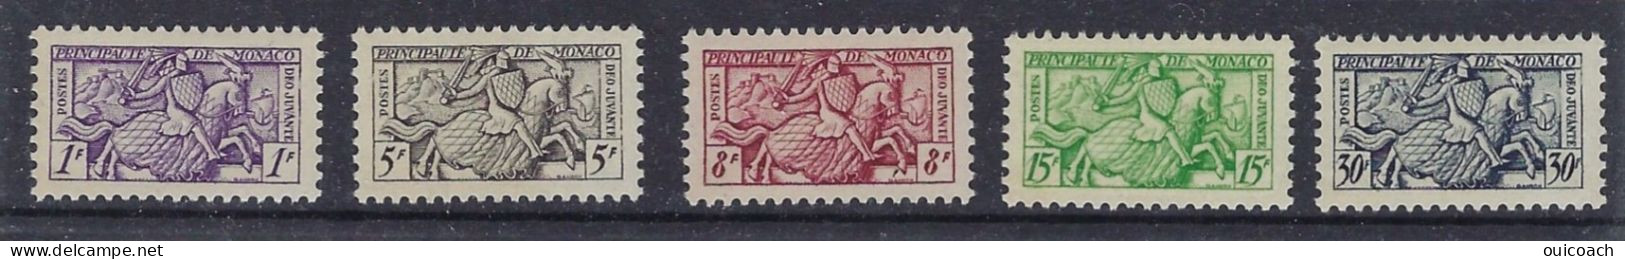 Sceau Prince, 371 à 375** - Unused Stamps